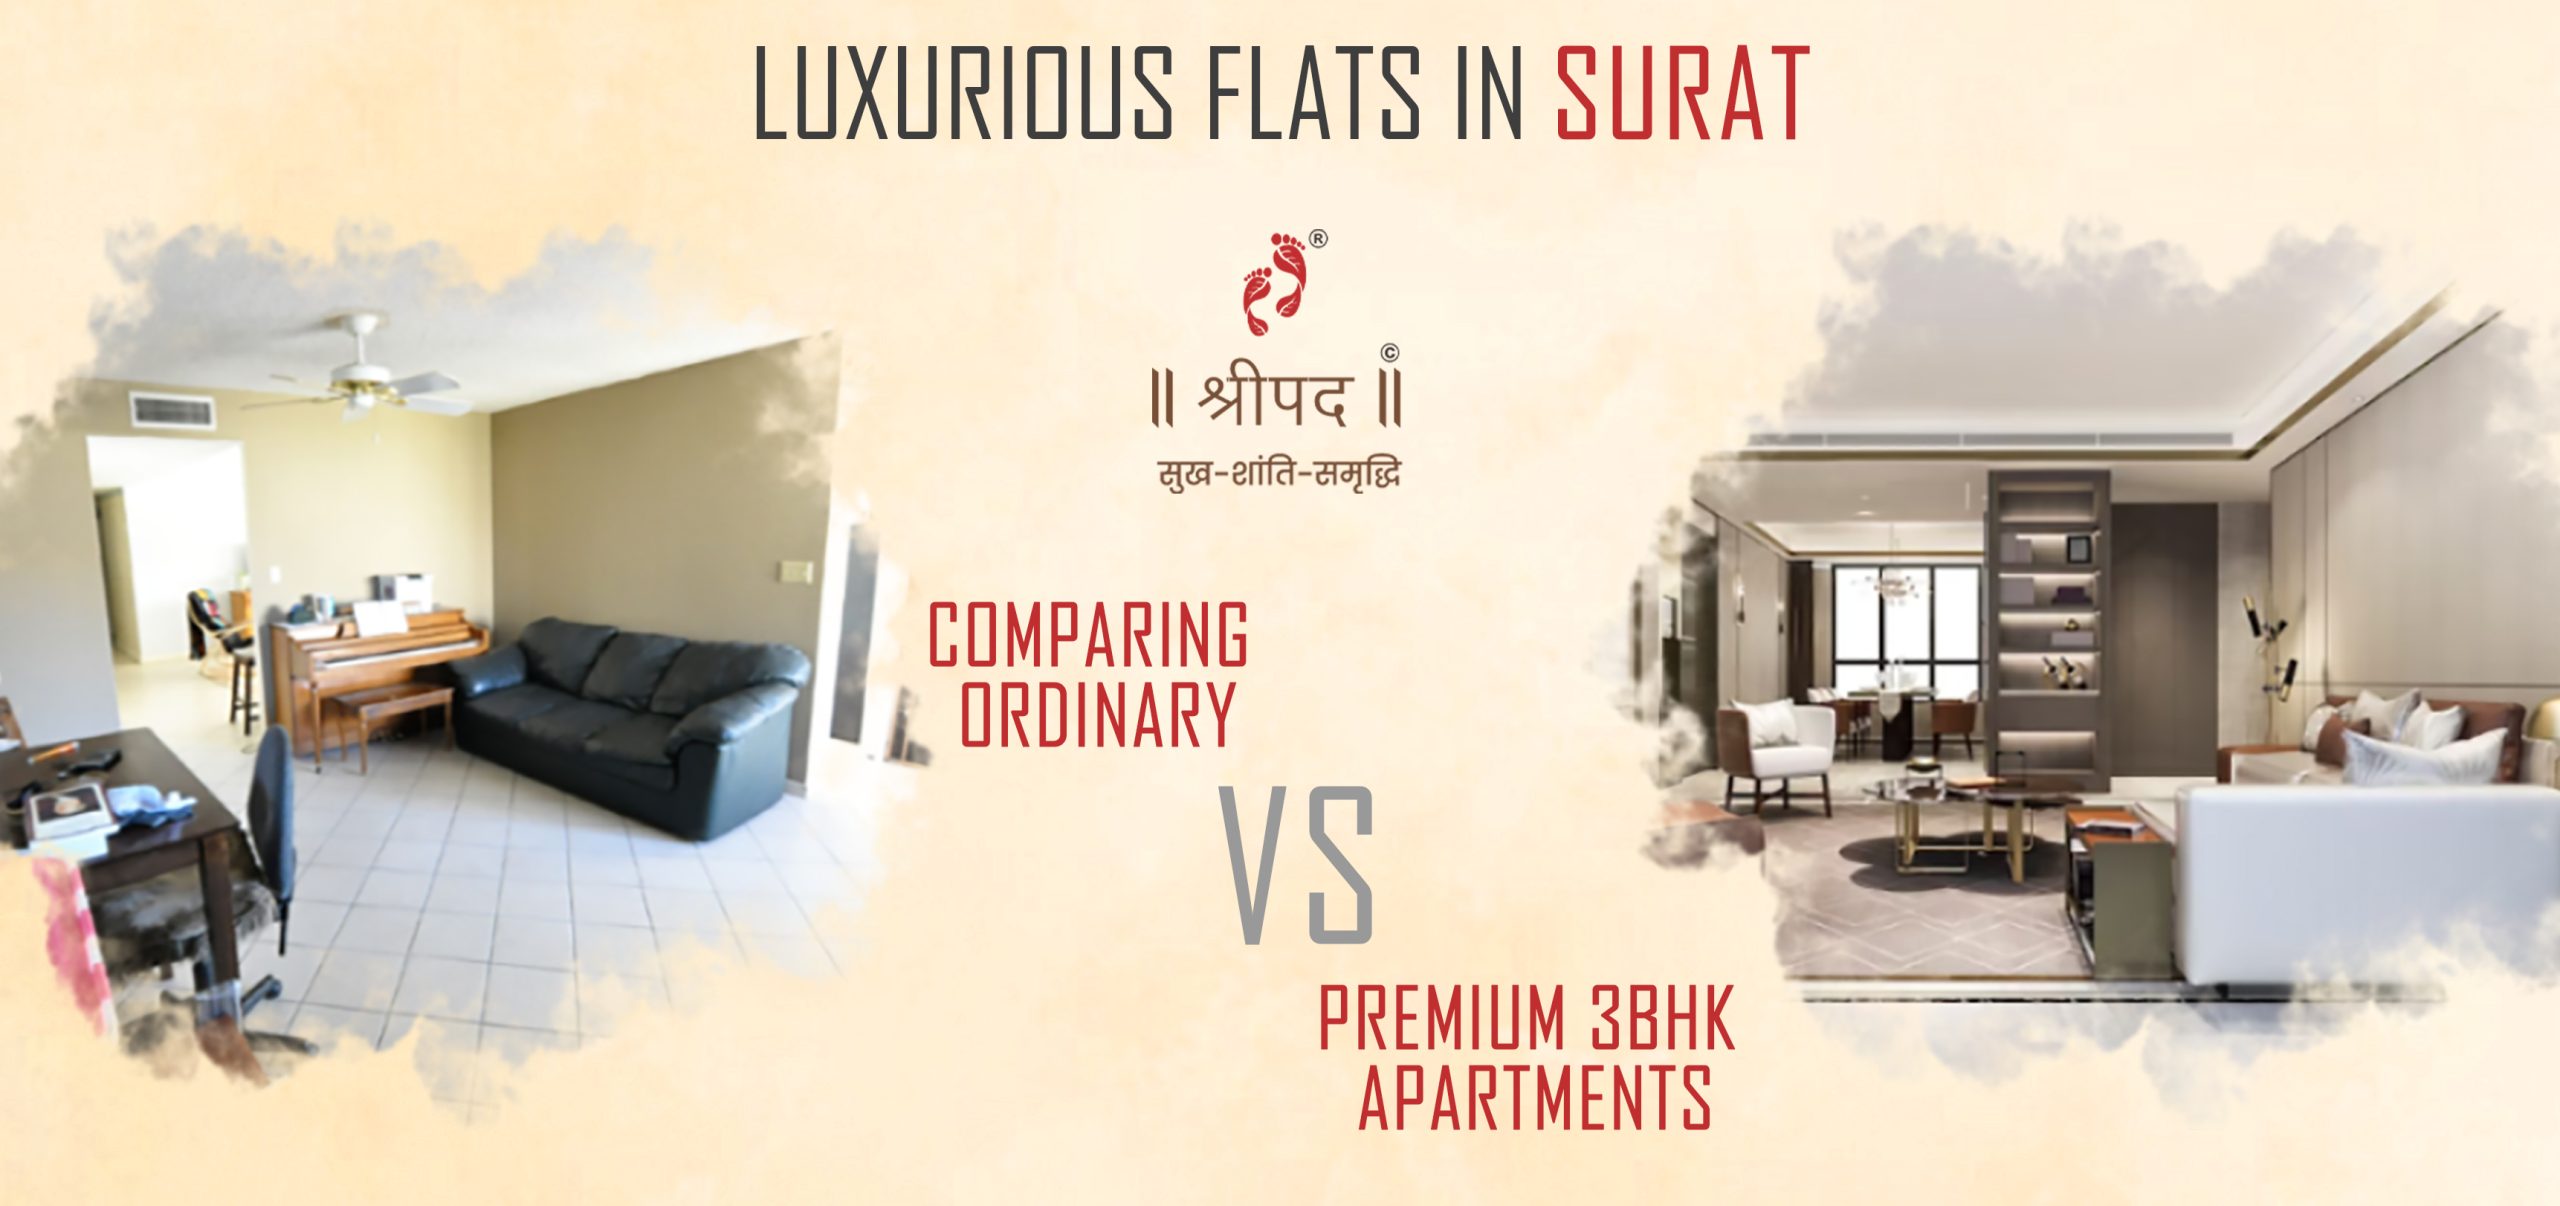 Luxurious Flats in Surat: Comparing Ordinary vs. Premium 3BHK Apartments